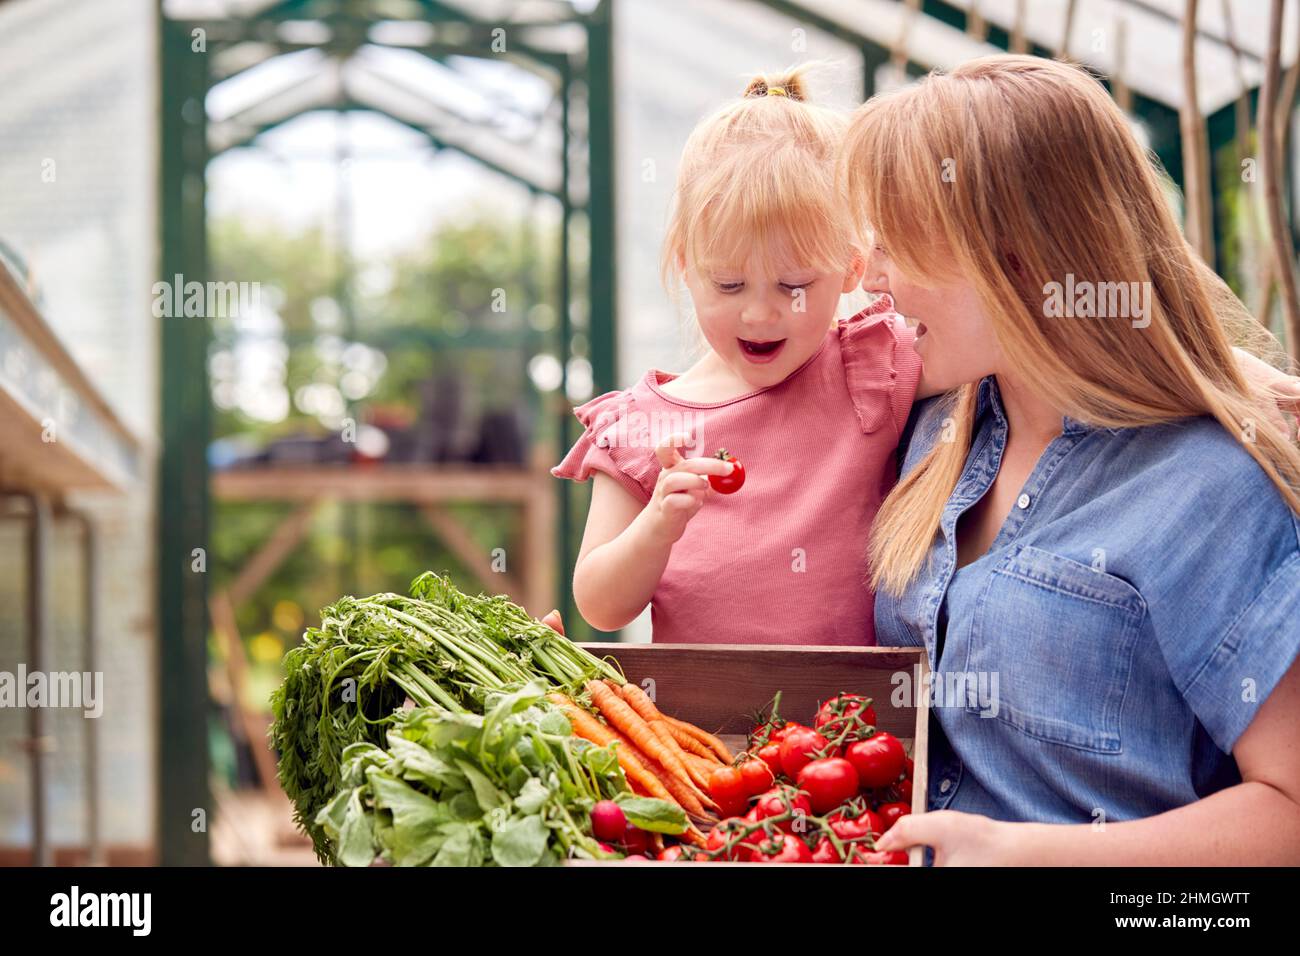 Madre e figlia che tiene la scatola delle verdure coltivate in casa in serra Foto Stock